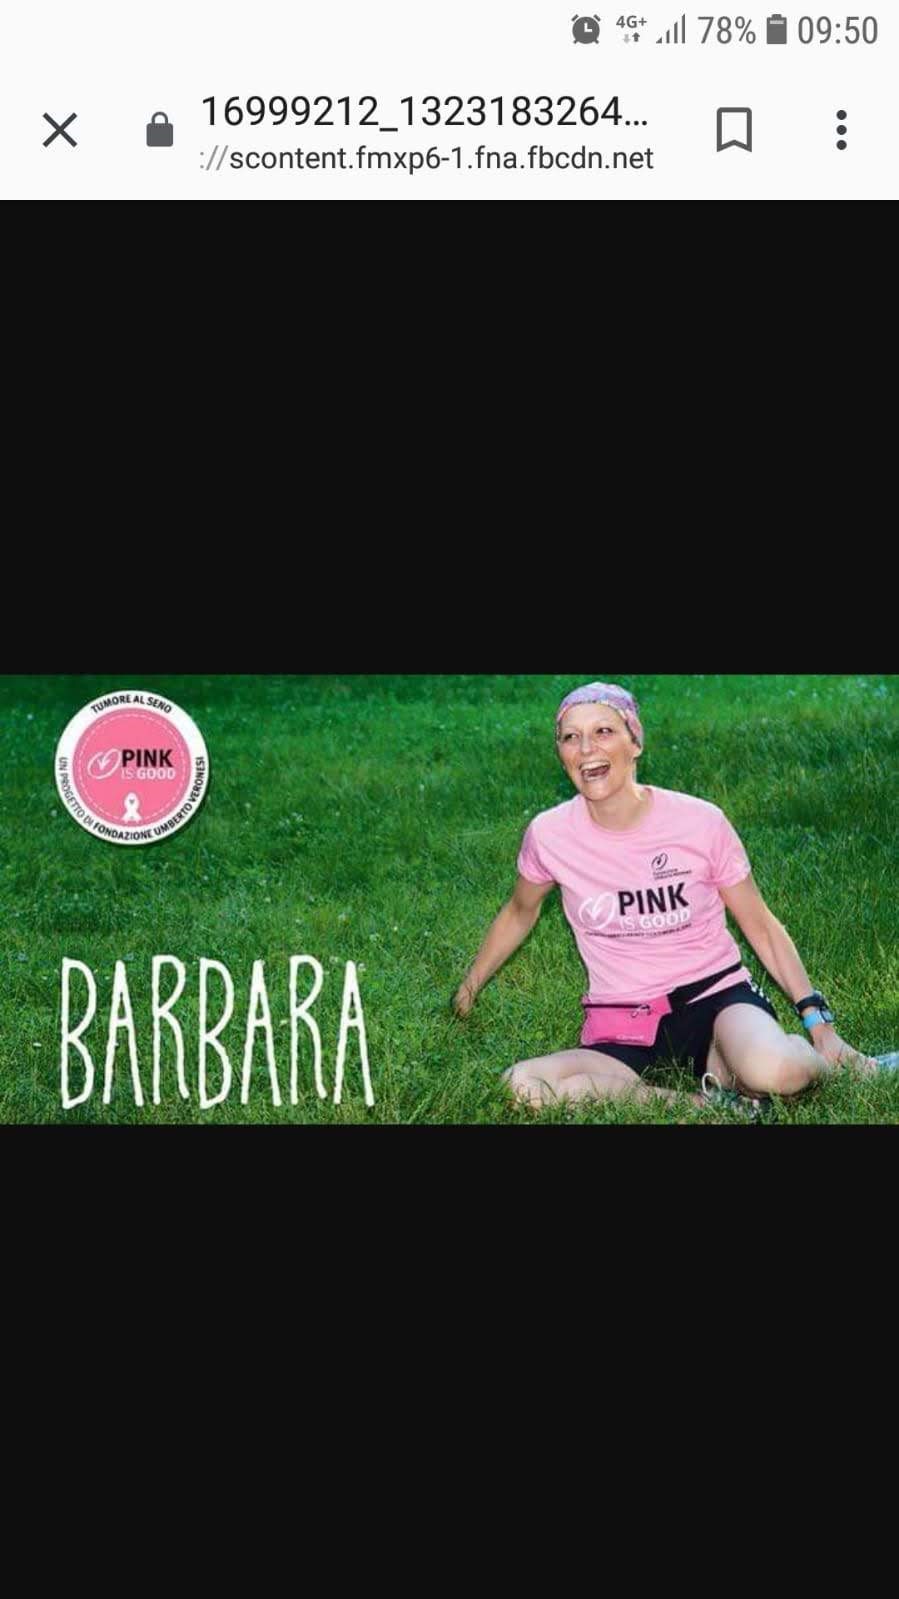 Dedicato a Barbara, una Pink fantastica-Manuela  Bozzolan